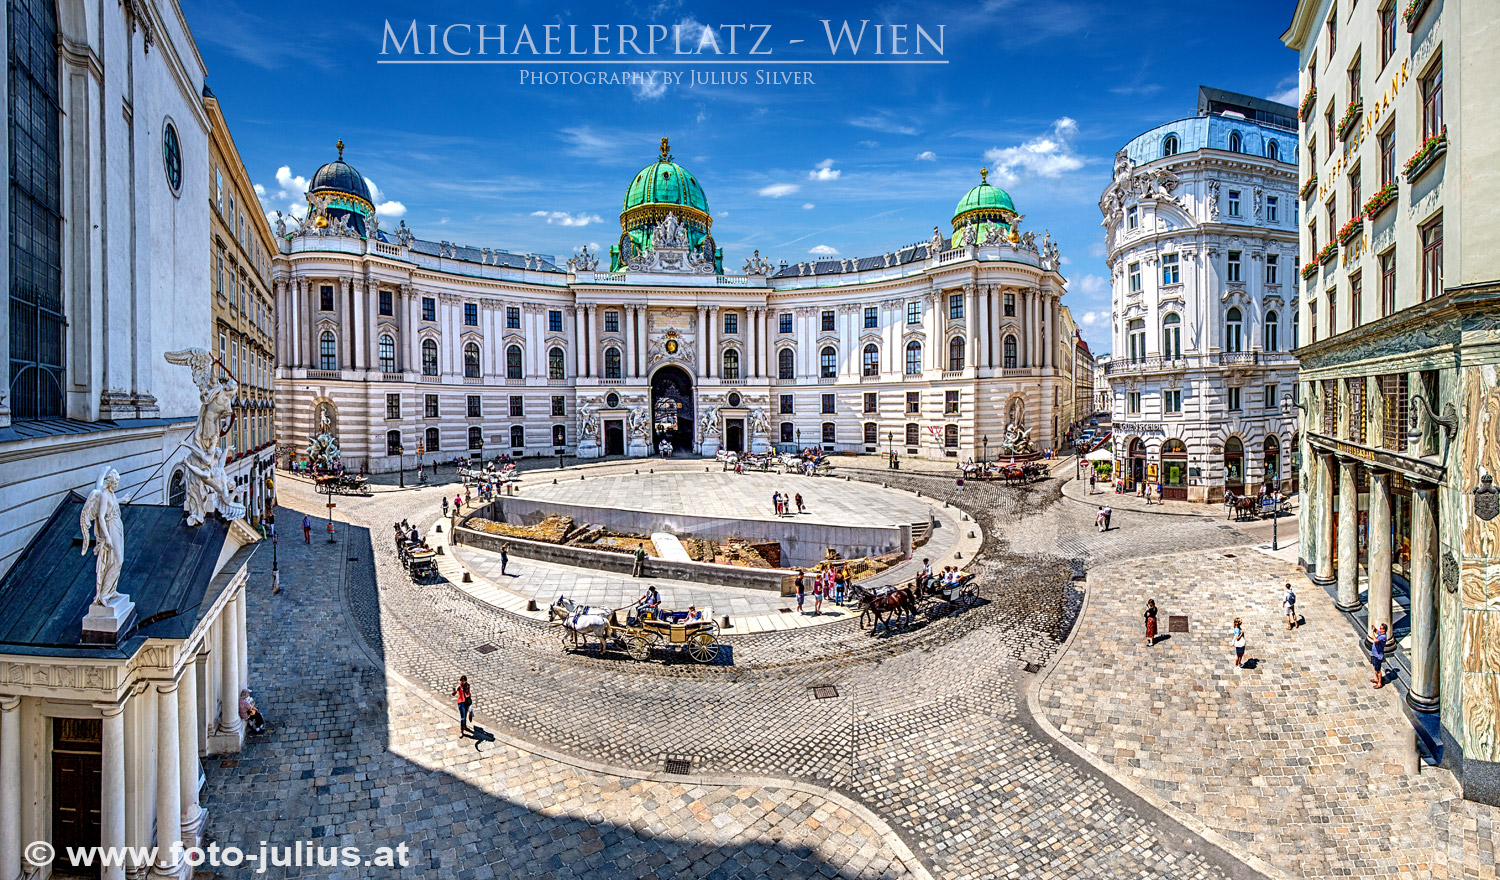 W6933a_Michaelerplatz_Wien.jpg, 687kB